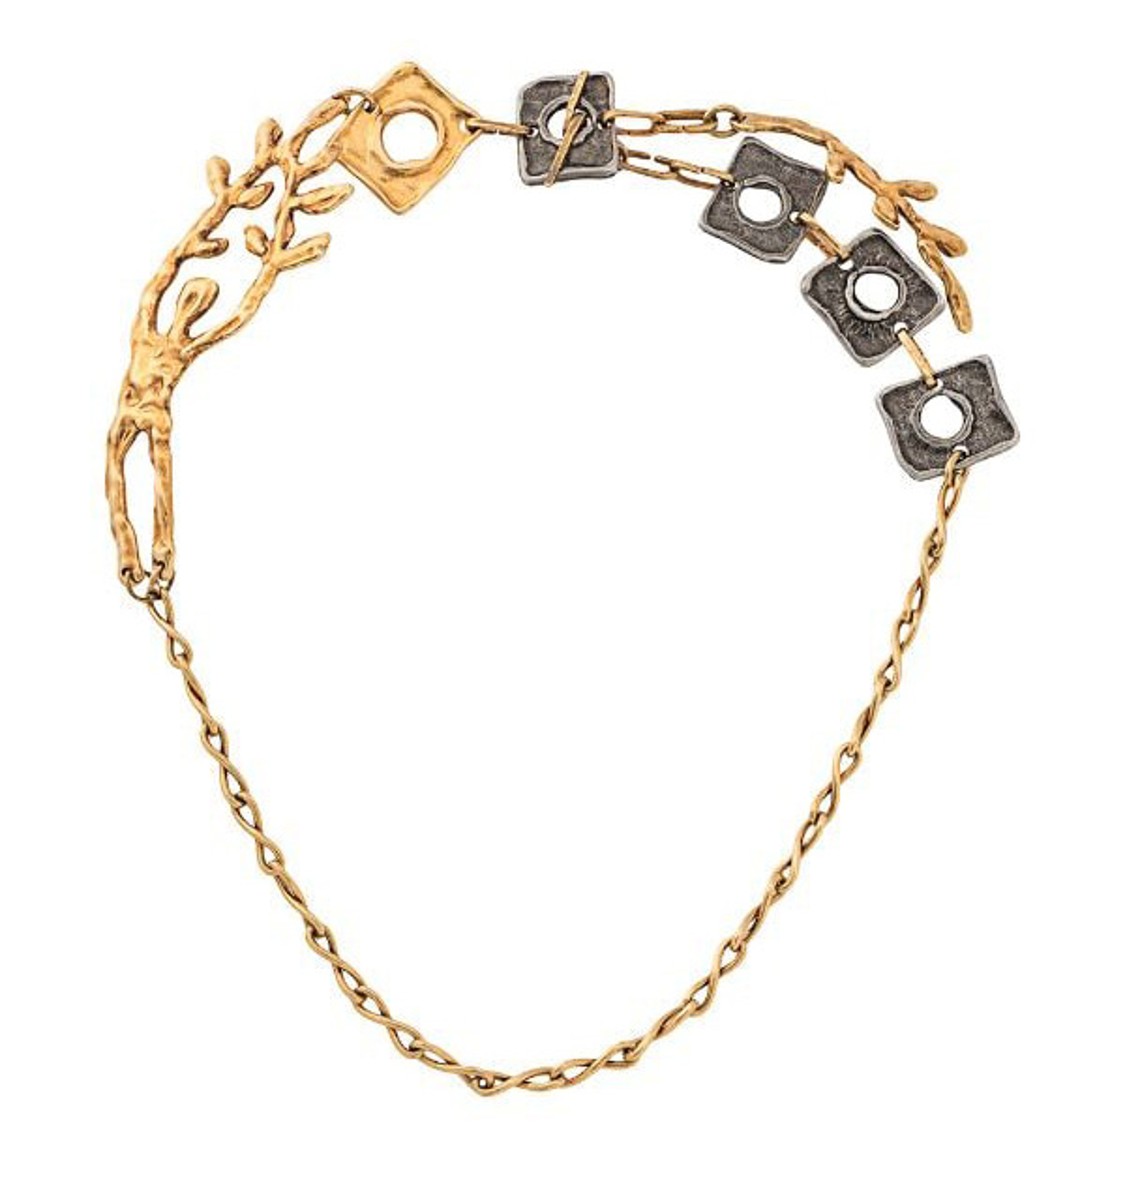 shop Marni  Bijoux: Bijoux Marni, collana a catena, con pendente, chiusura a T.

Composizione: 100% ottone. number 1808